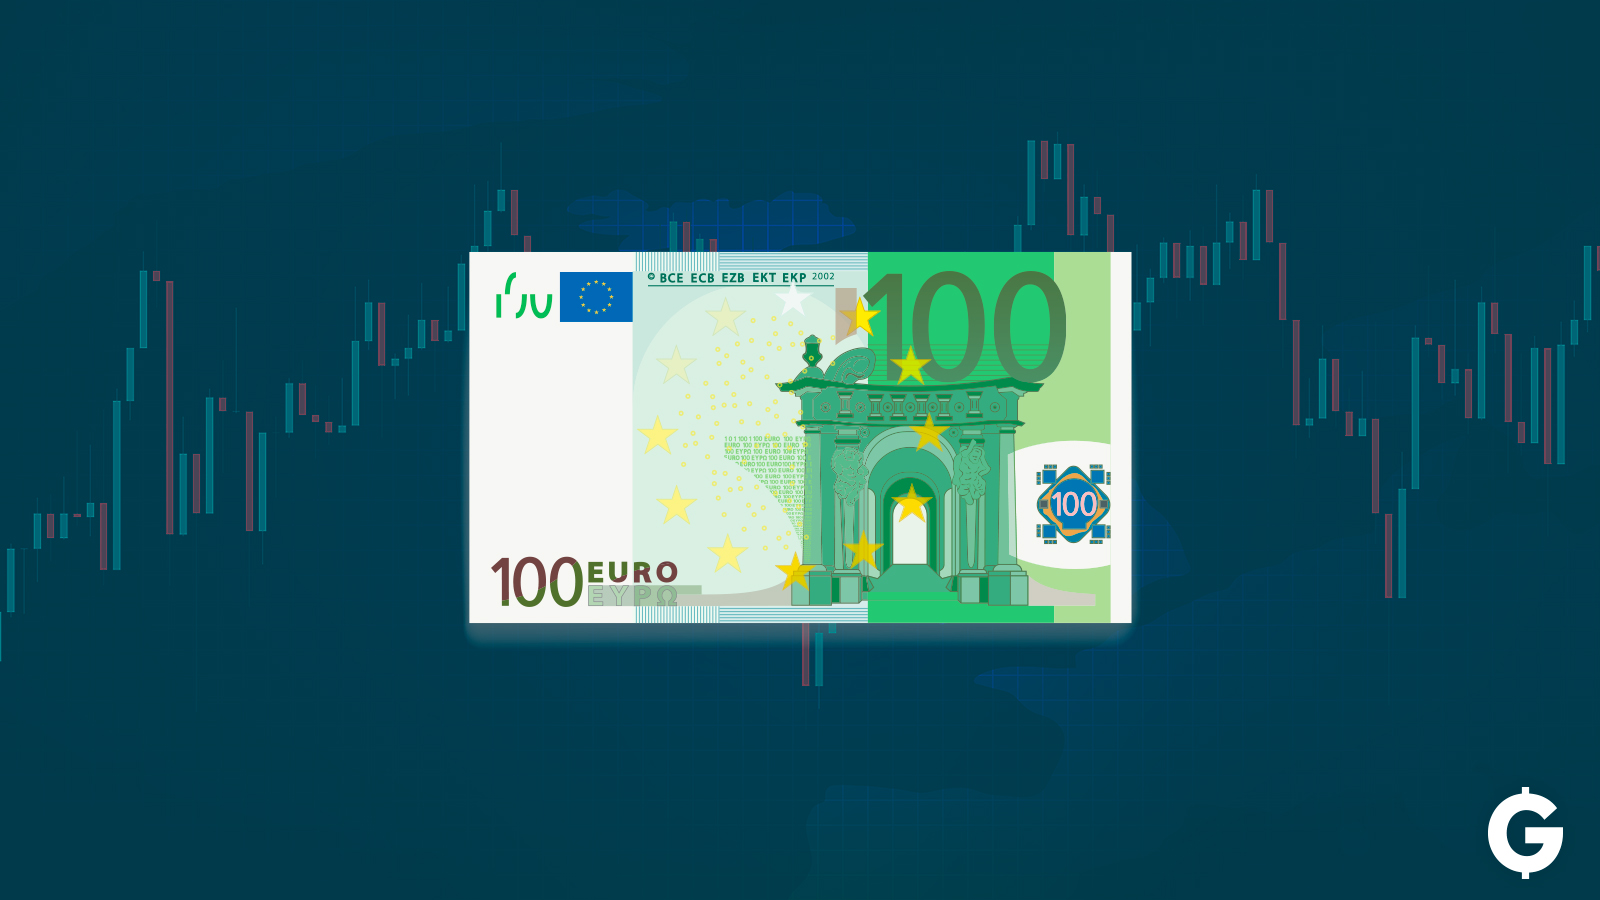 Copertina dell'articolo di come investire 100 euro